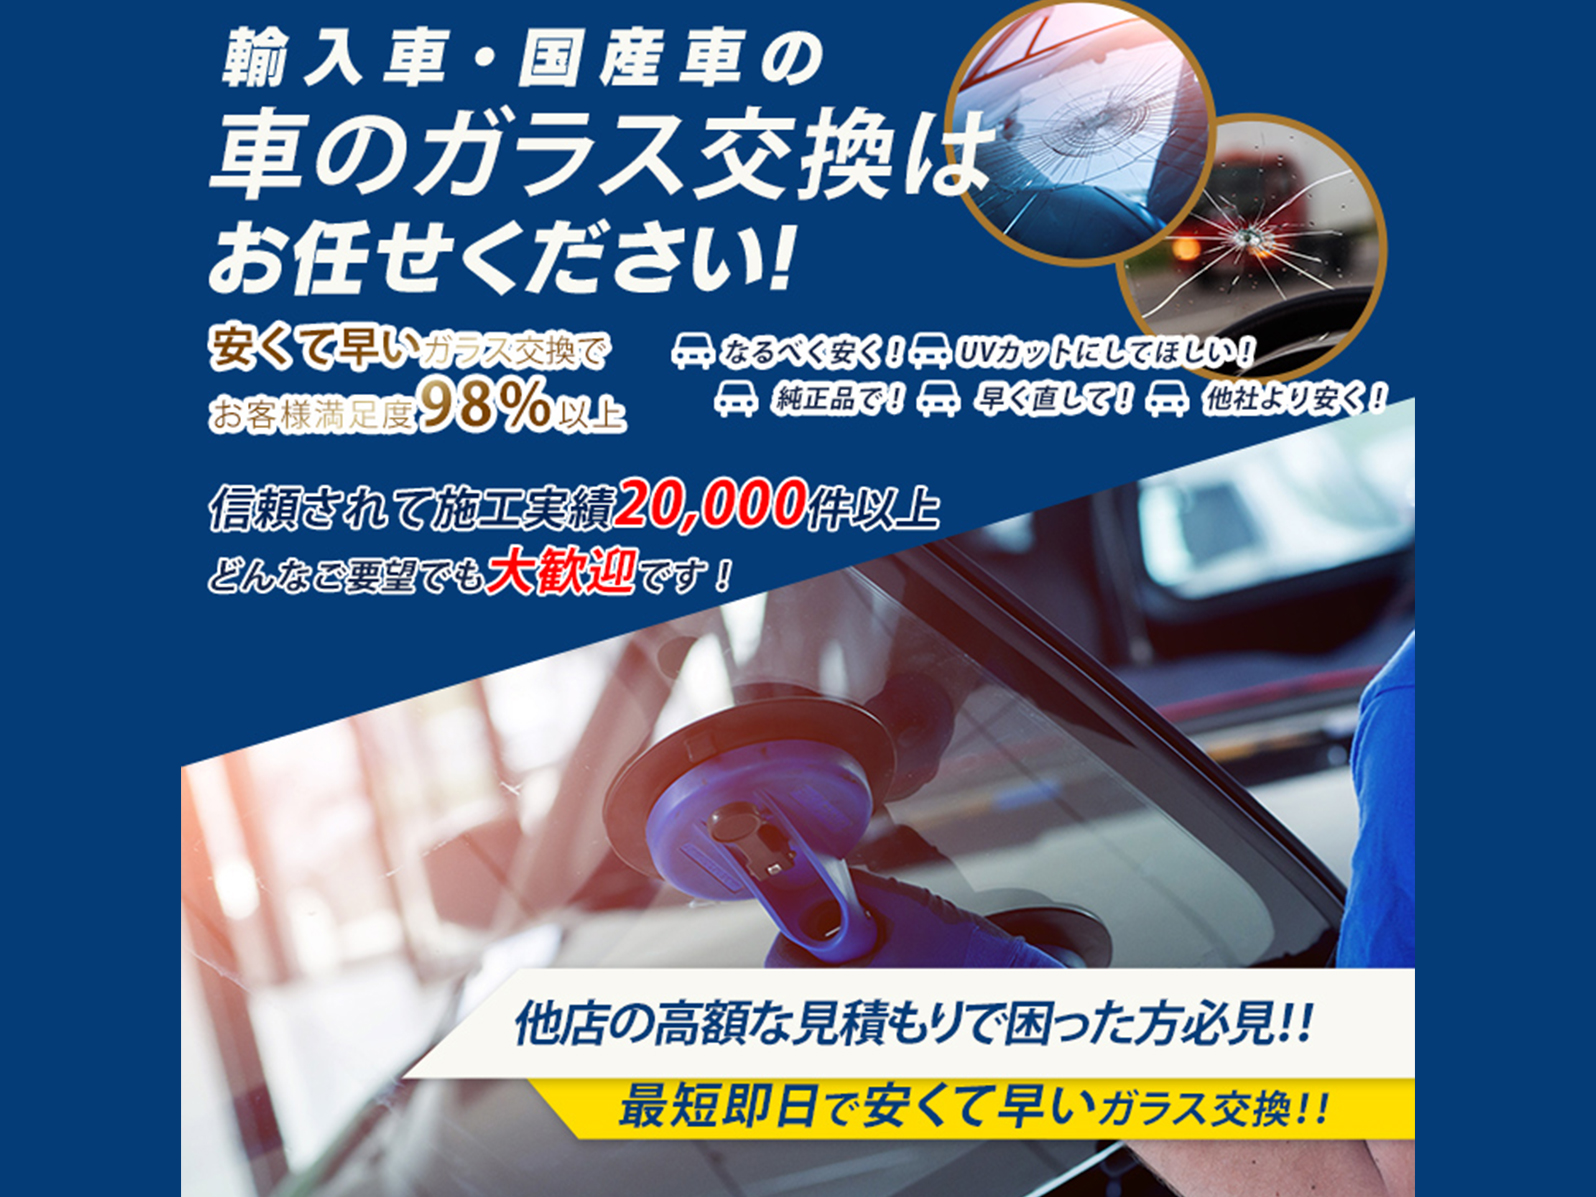 ワカシマガラス あらゆる国産 輸入車のガラス交換 修理は三鷹 東京23区のワカシマガラス にお任せください